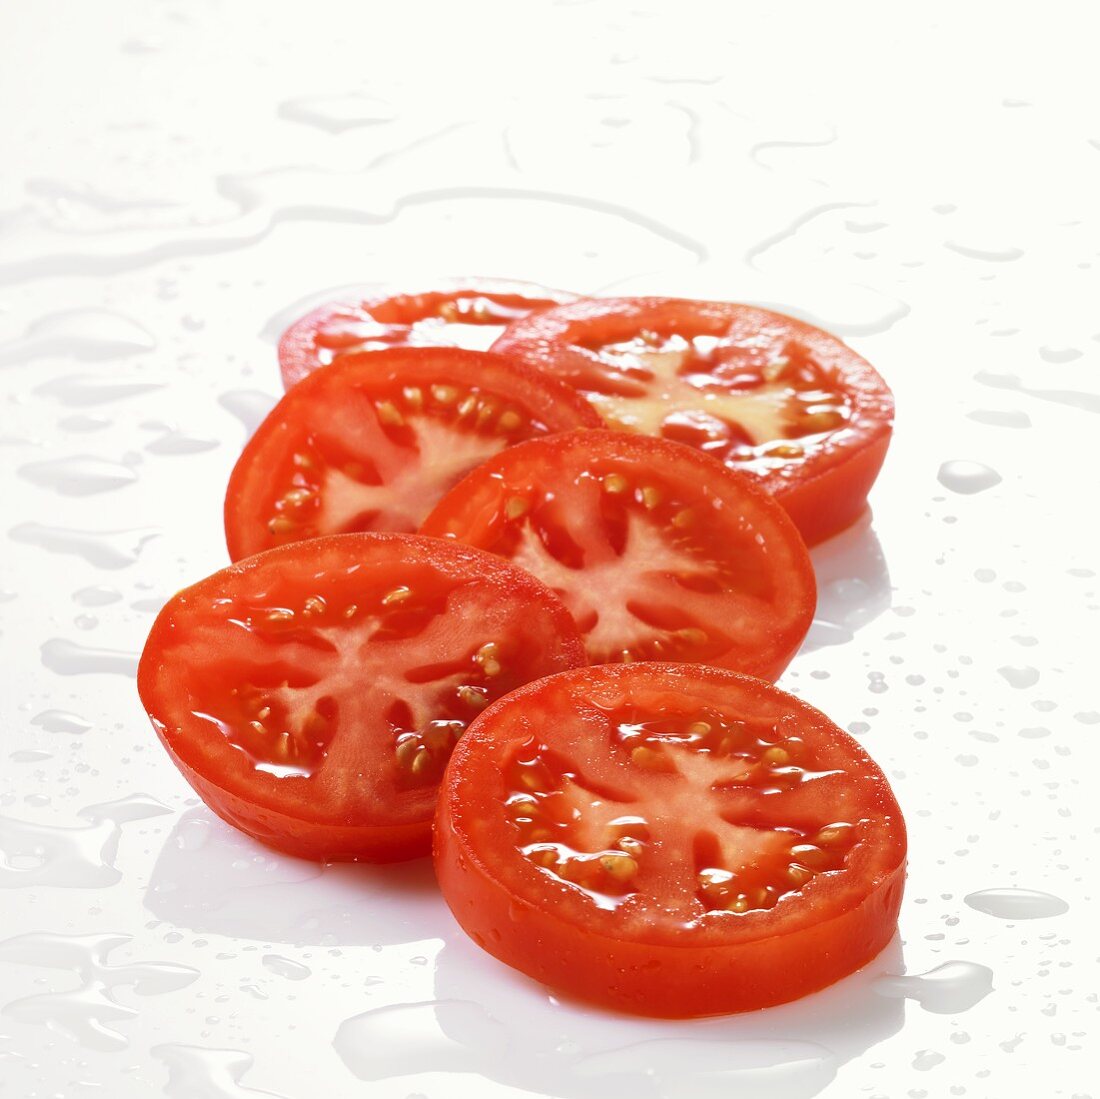 Freshly washed tomato slices